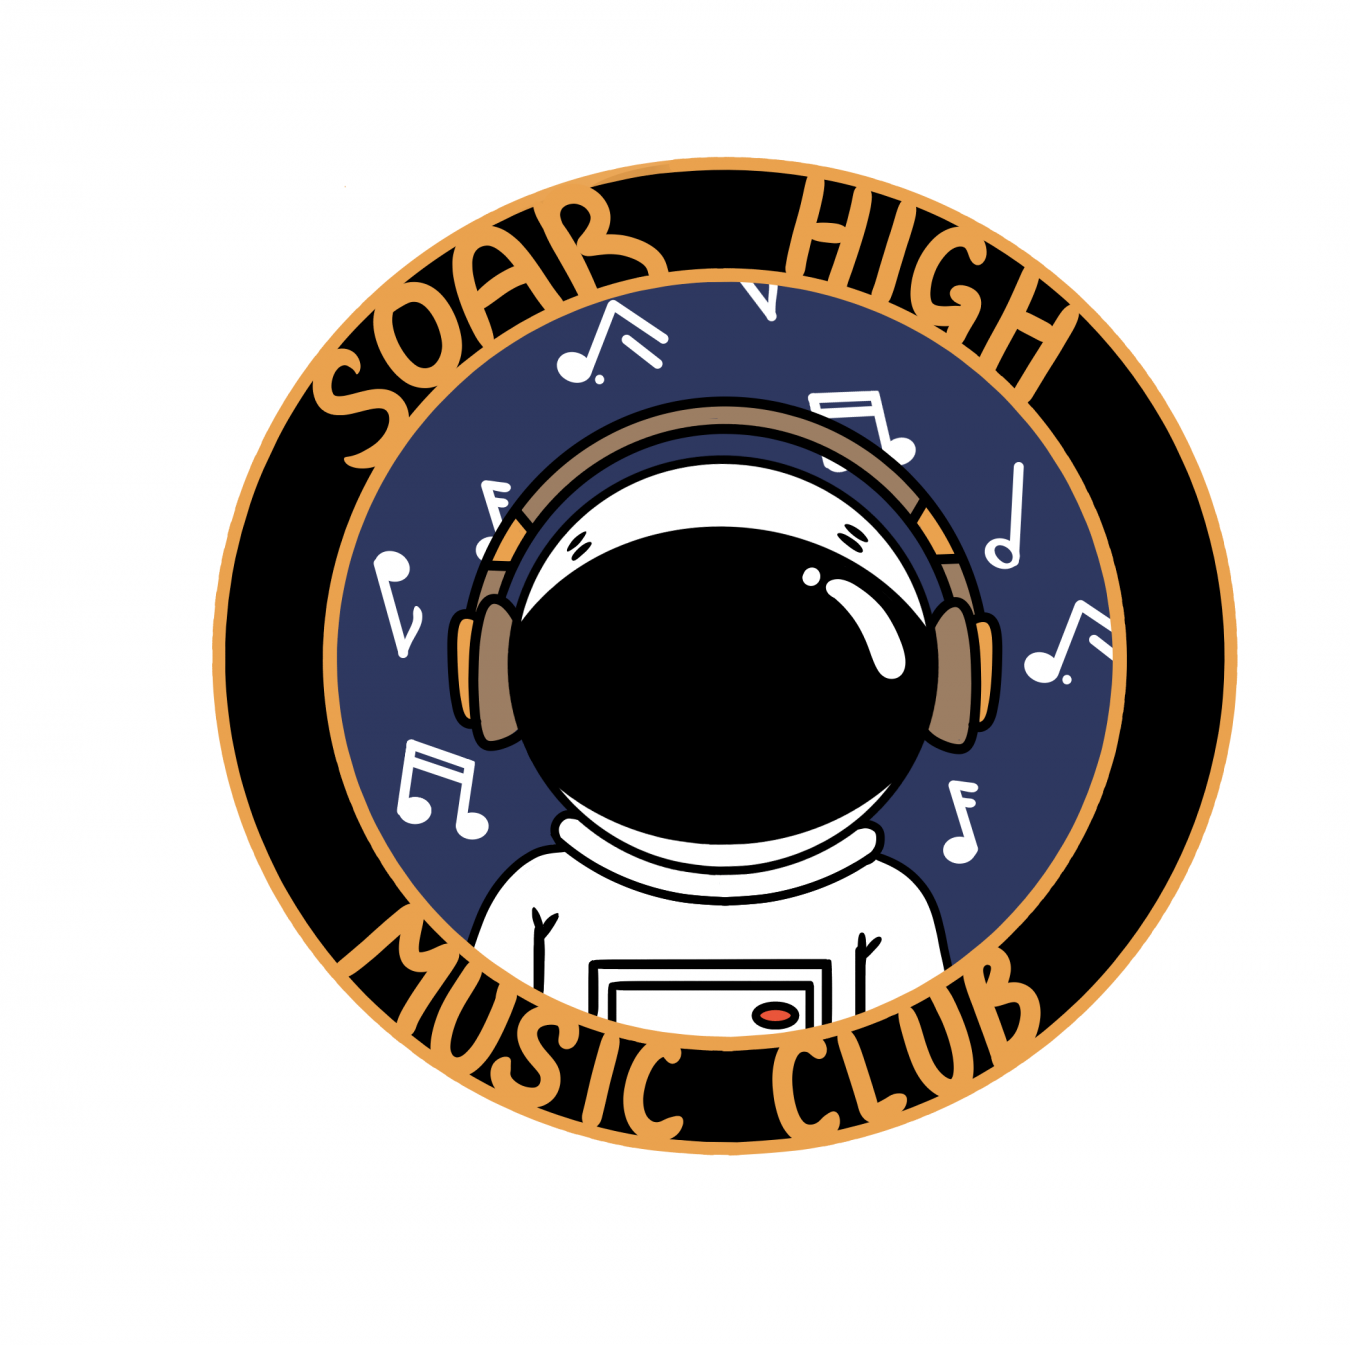 SOAR Music Club